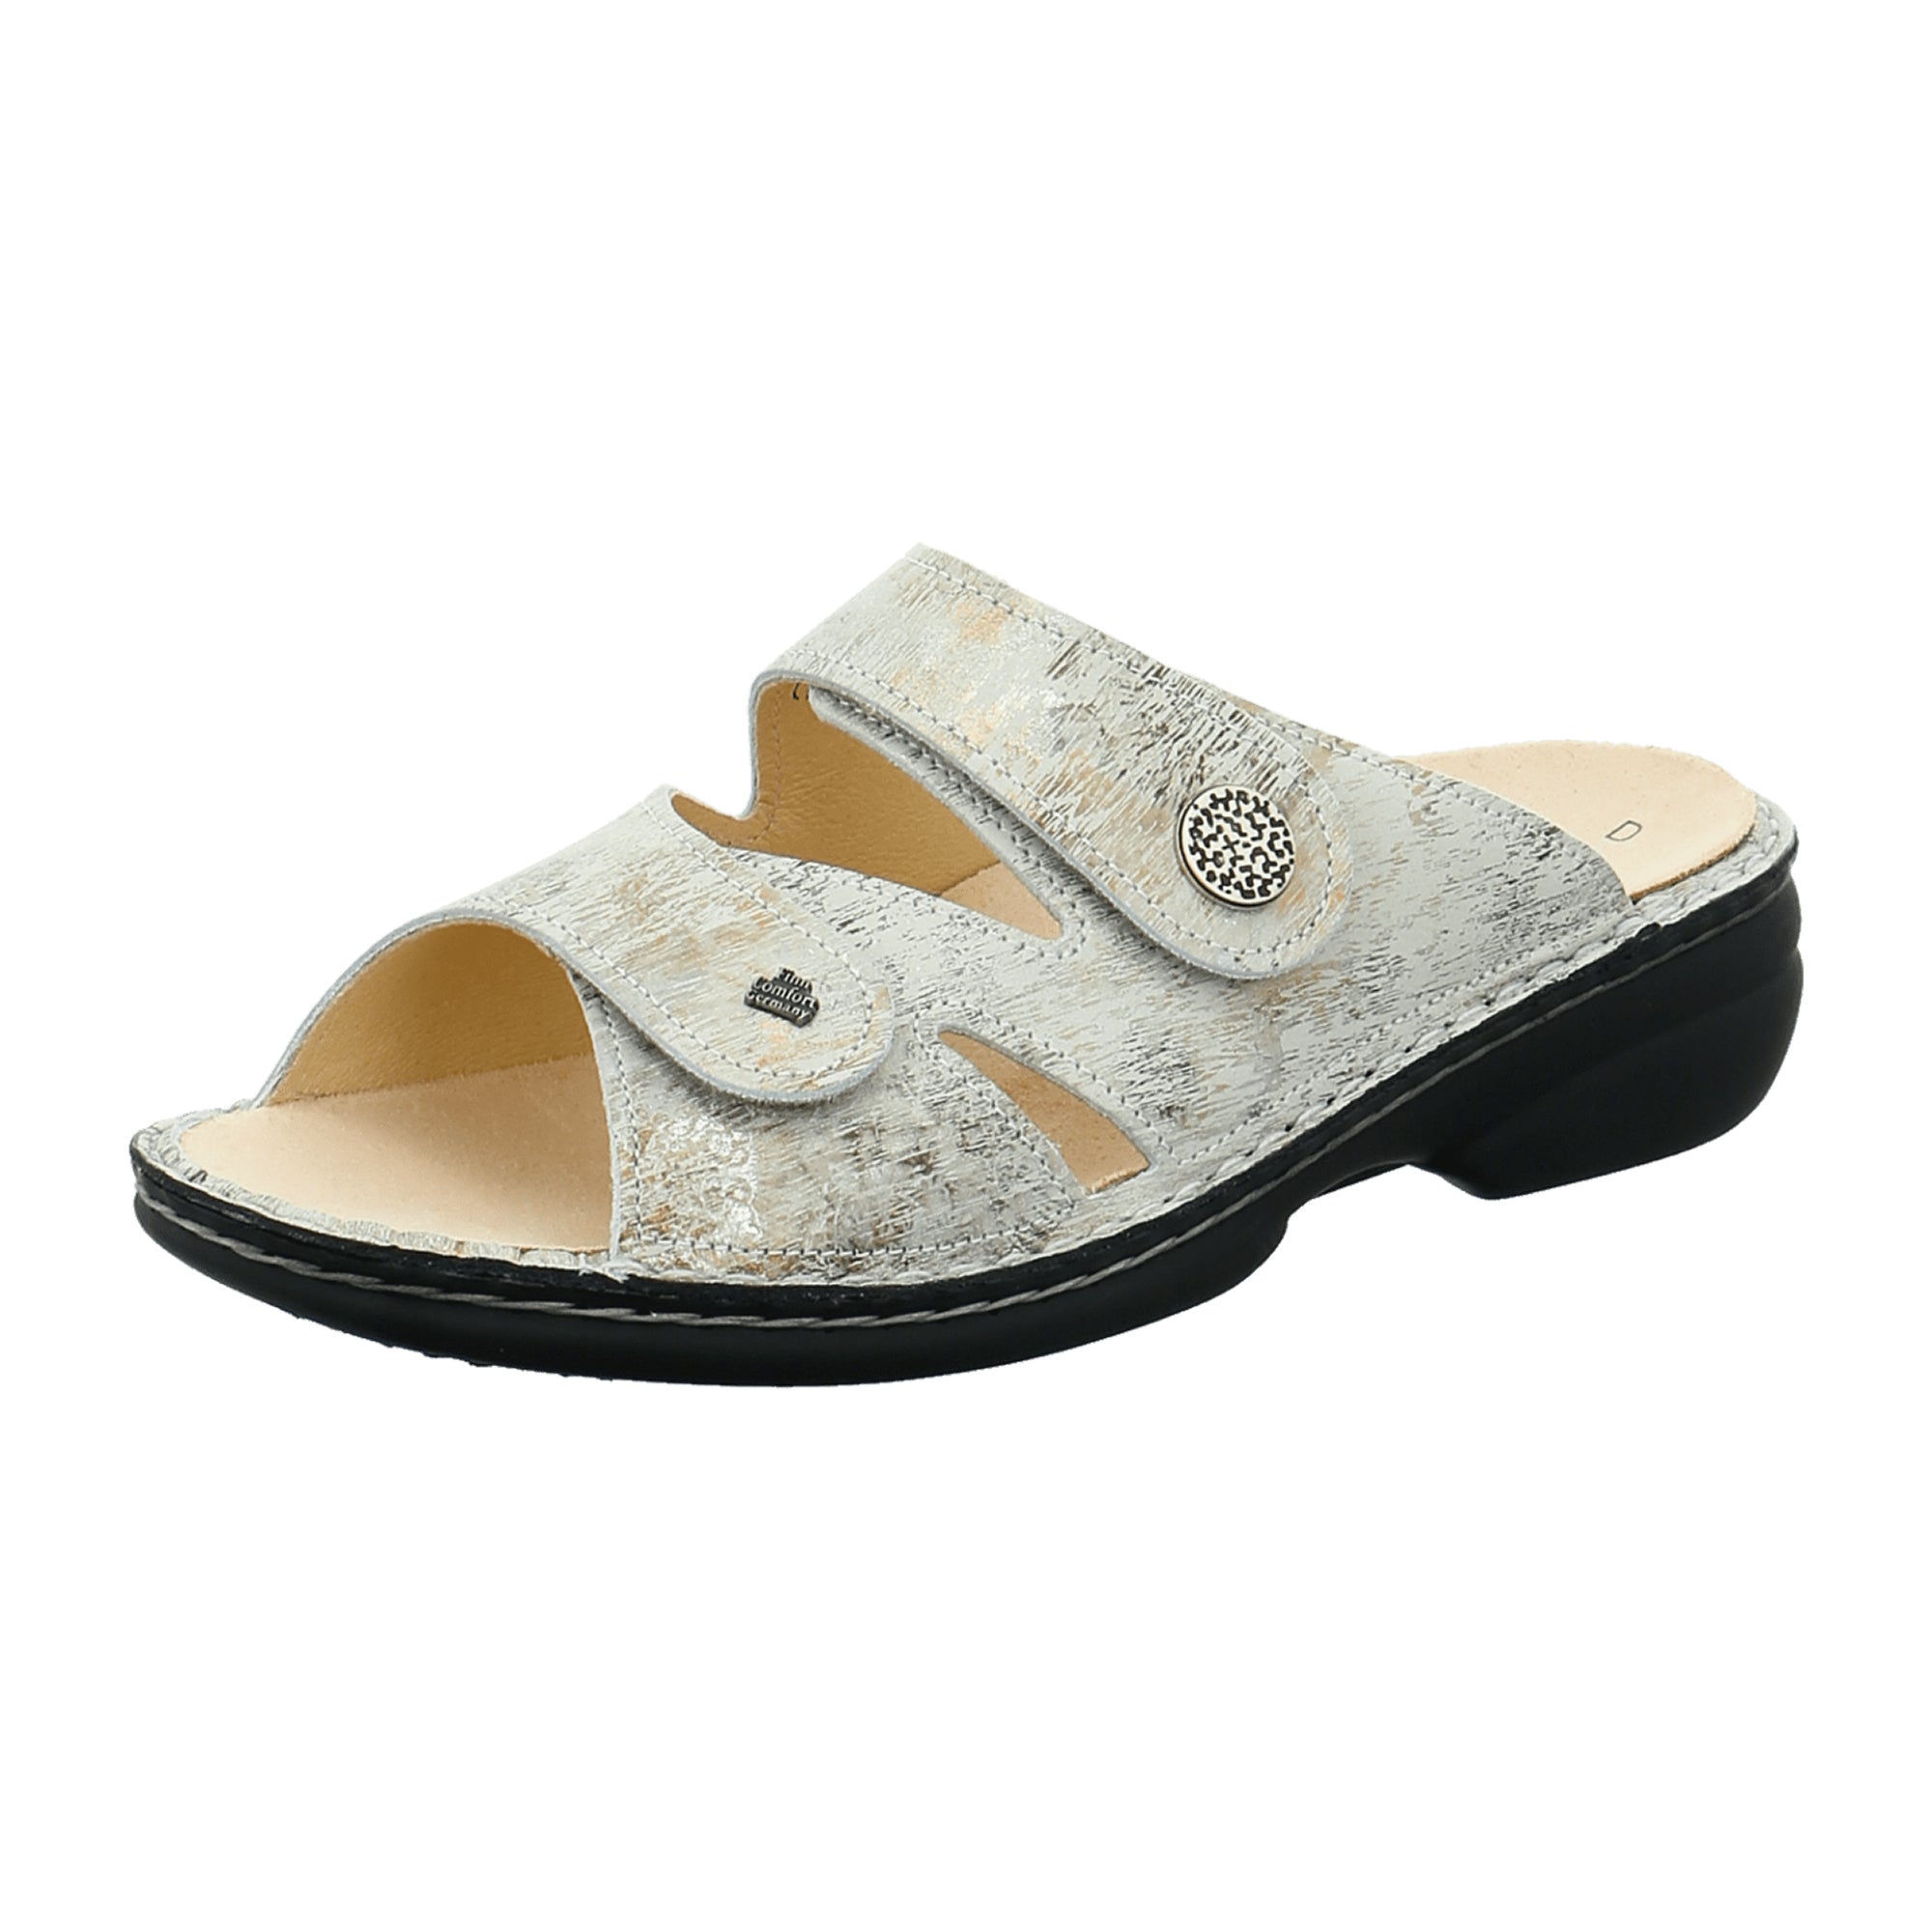 Finn Comfort Torbole Women's Comfort Sandals - Elegant White